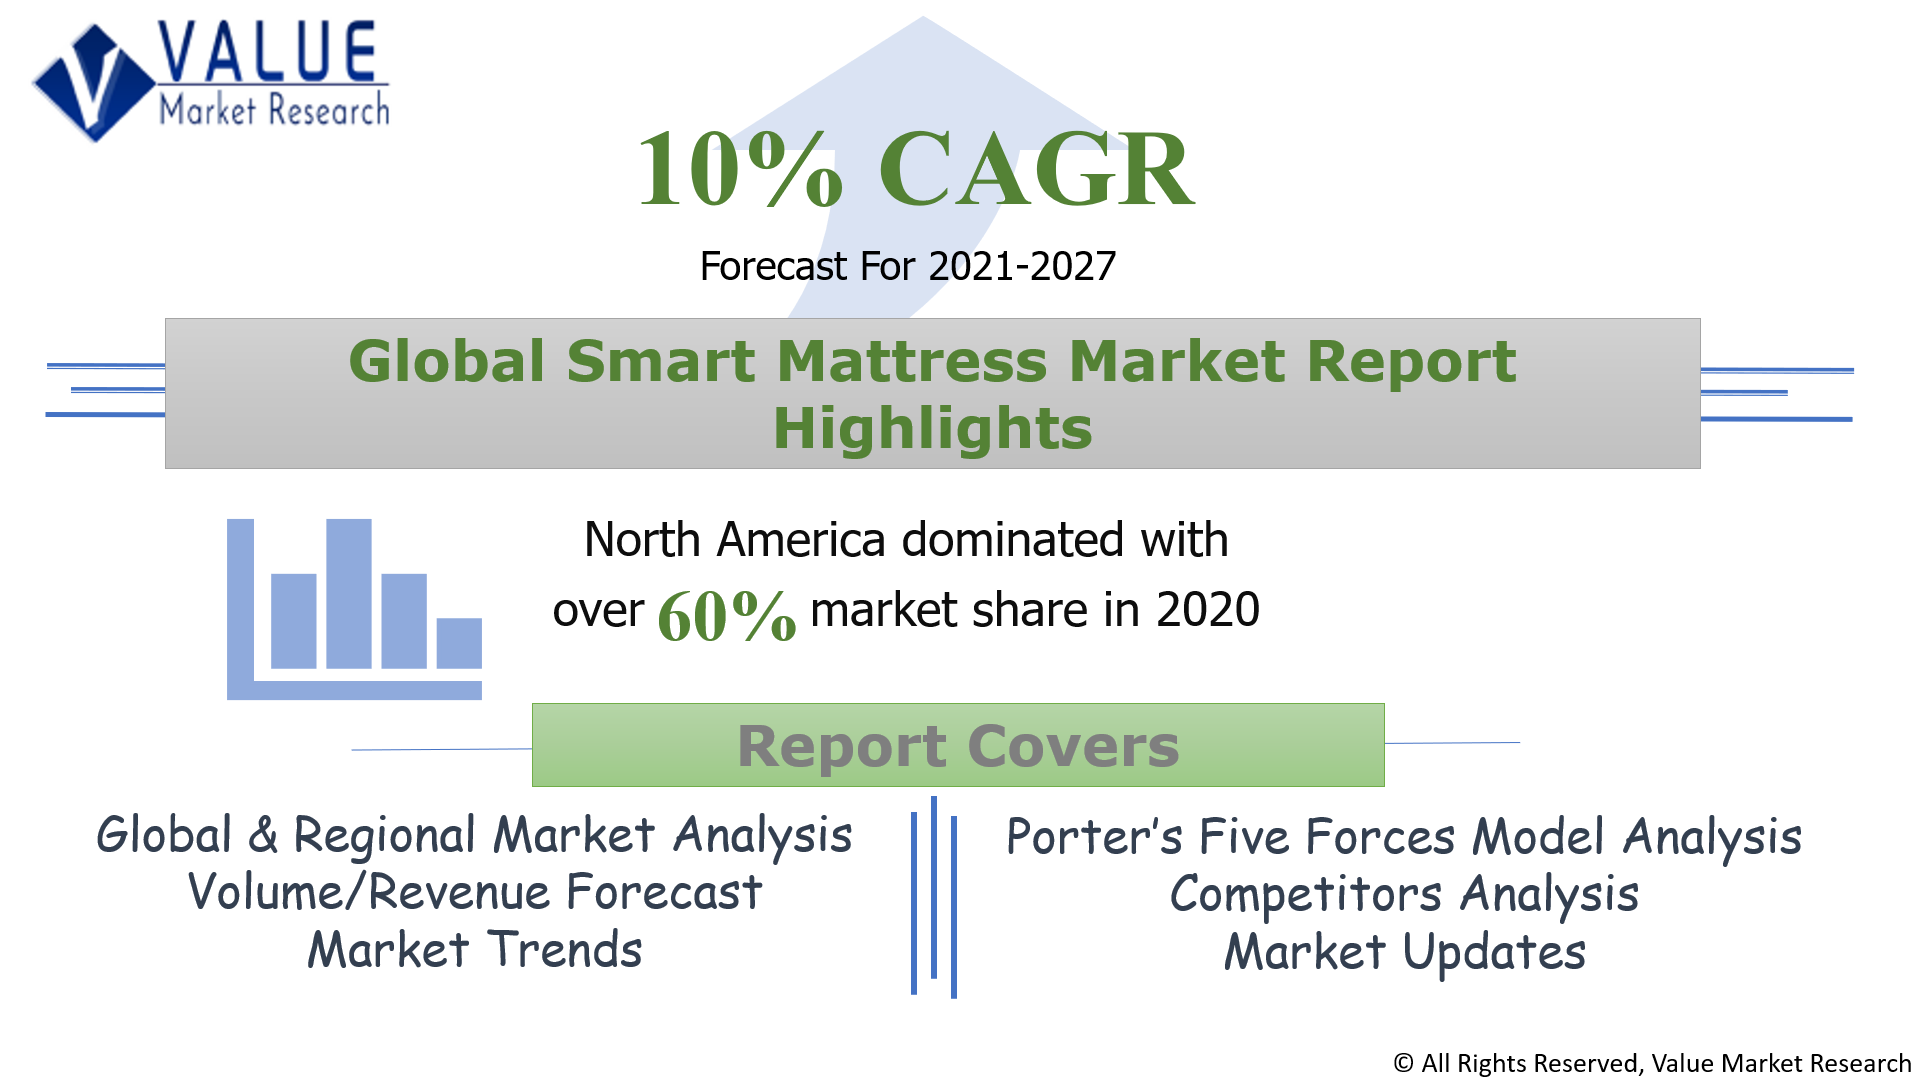 Global Smart Mattress Market Share